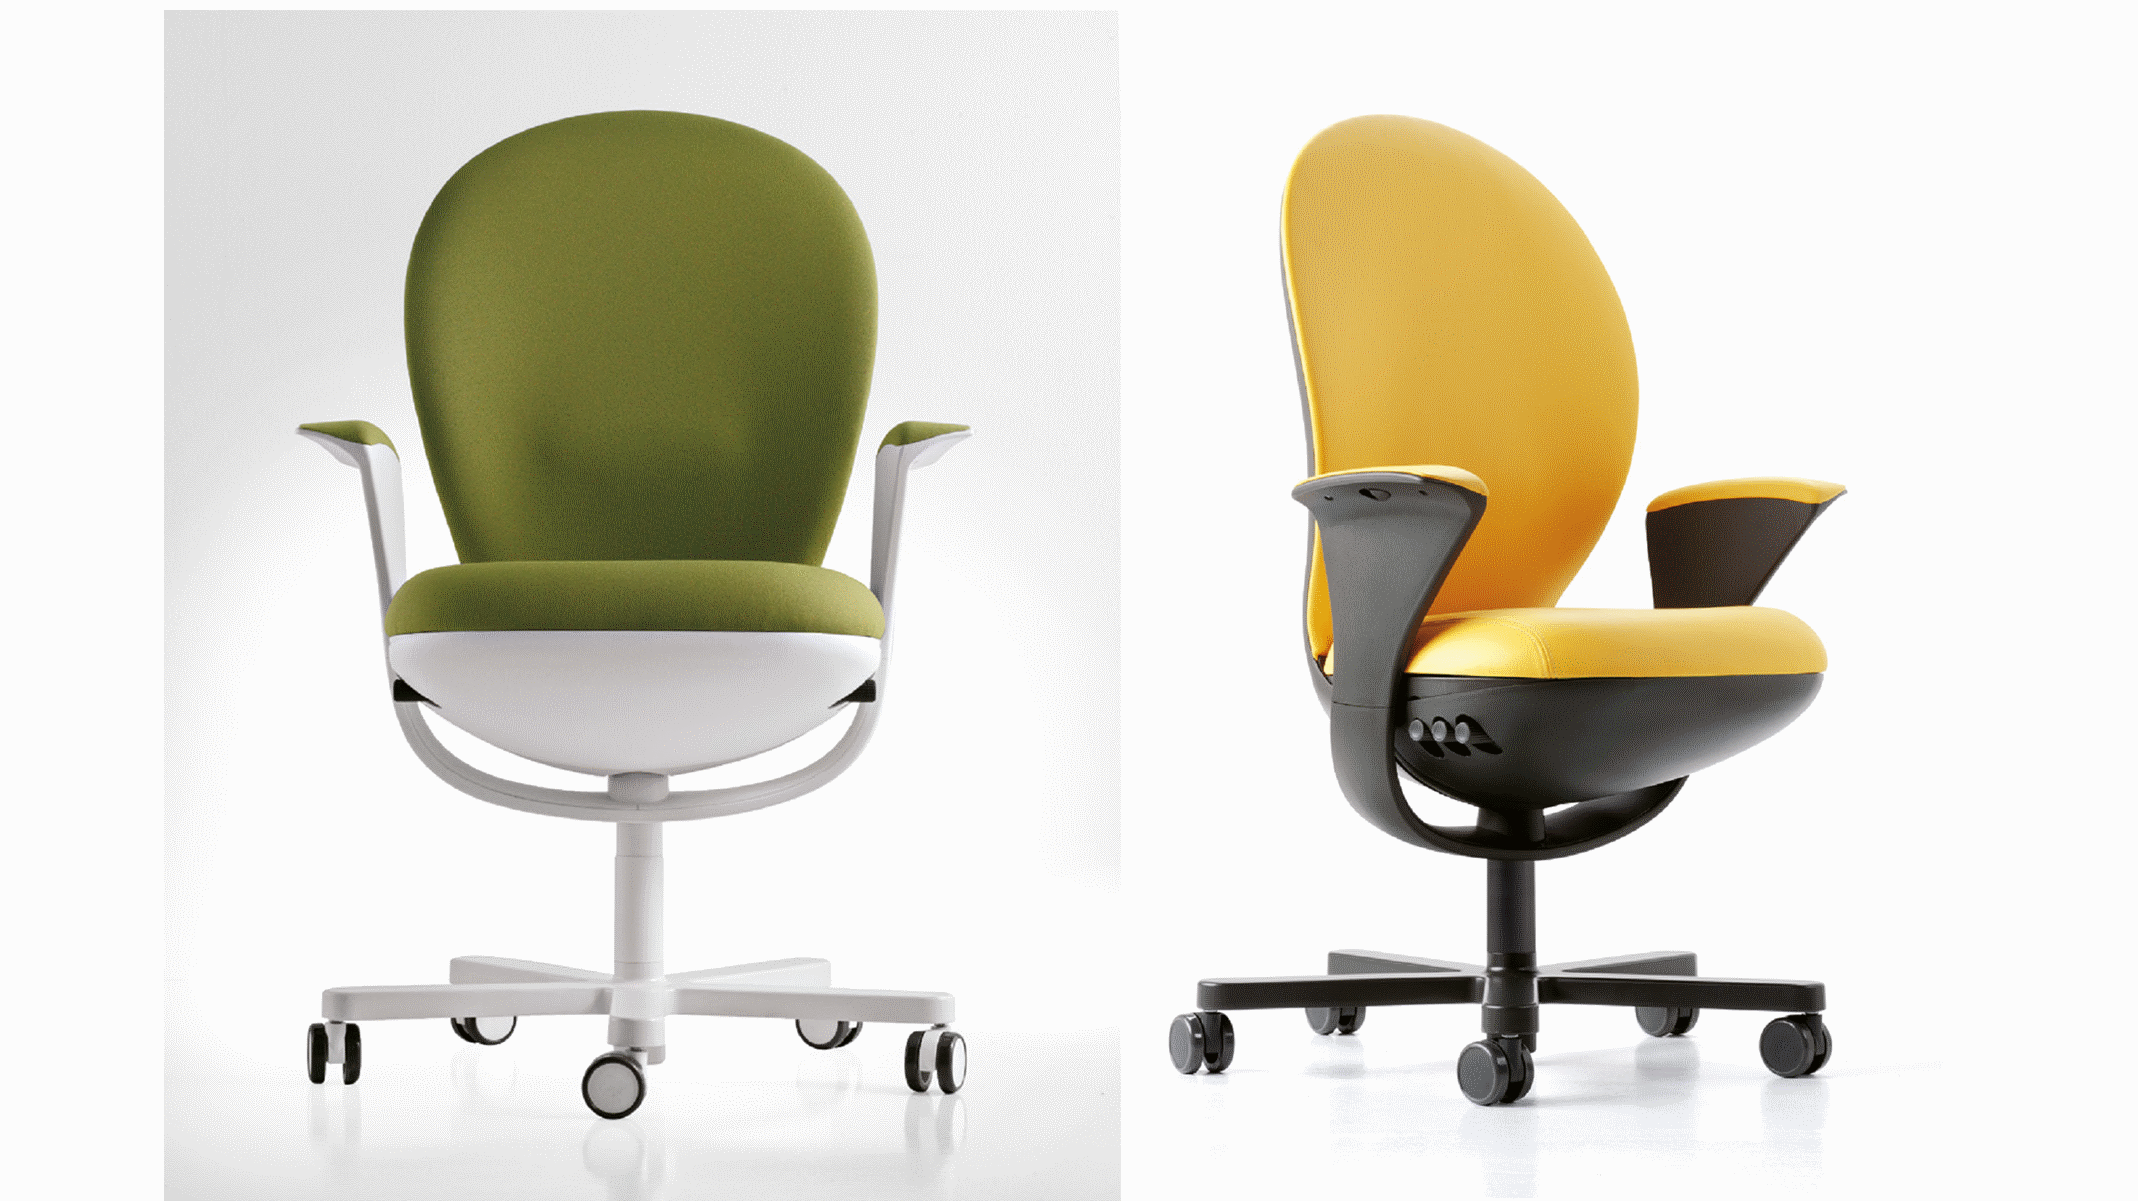 seduta direzionale luxy serie bea ergonomica girevole ufficio braccioli schienale verde gialla 2